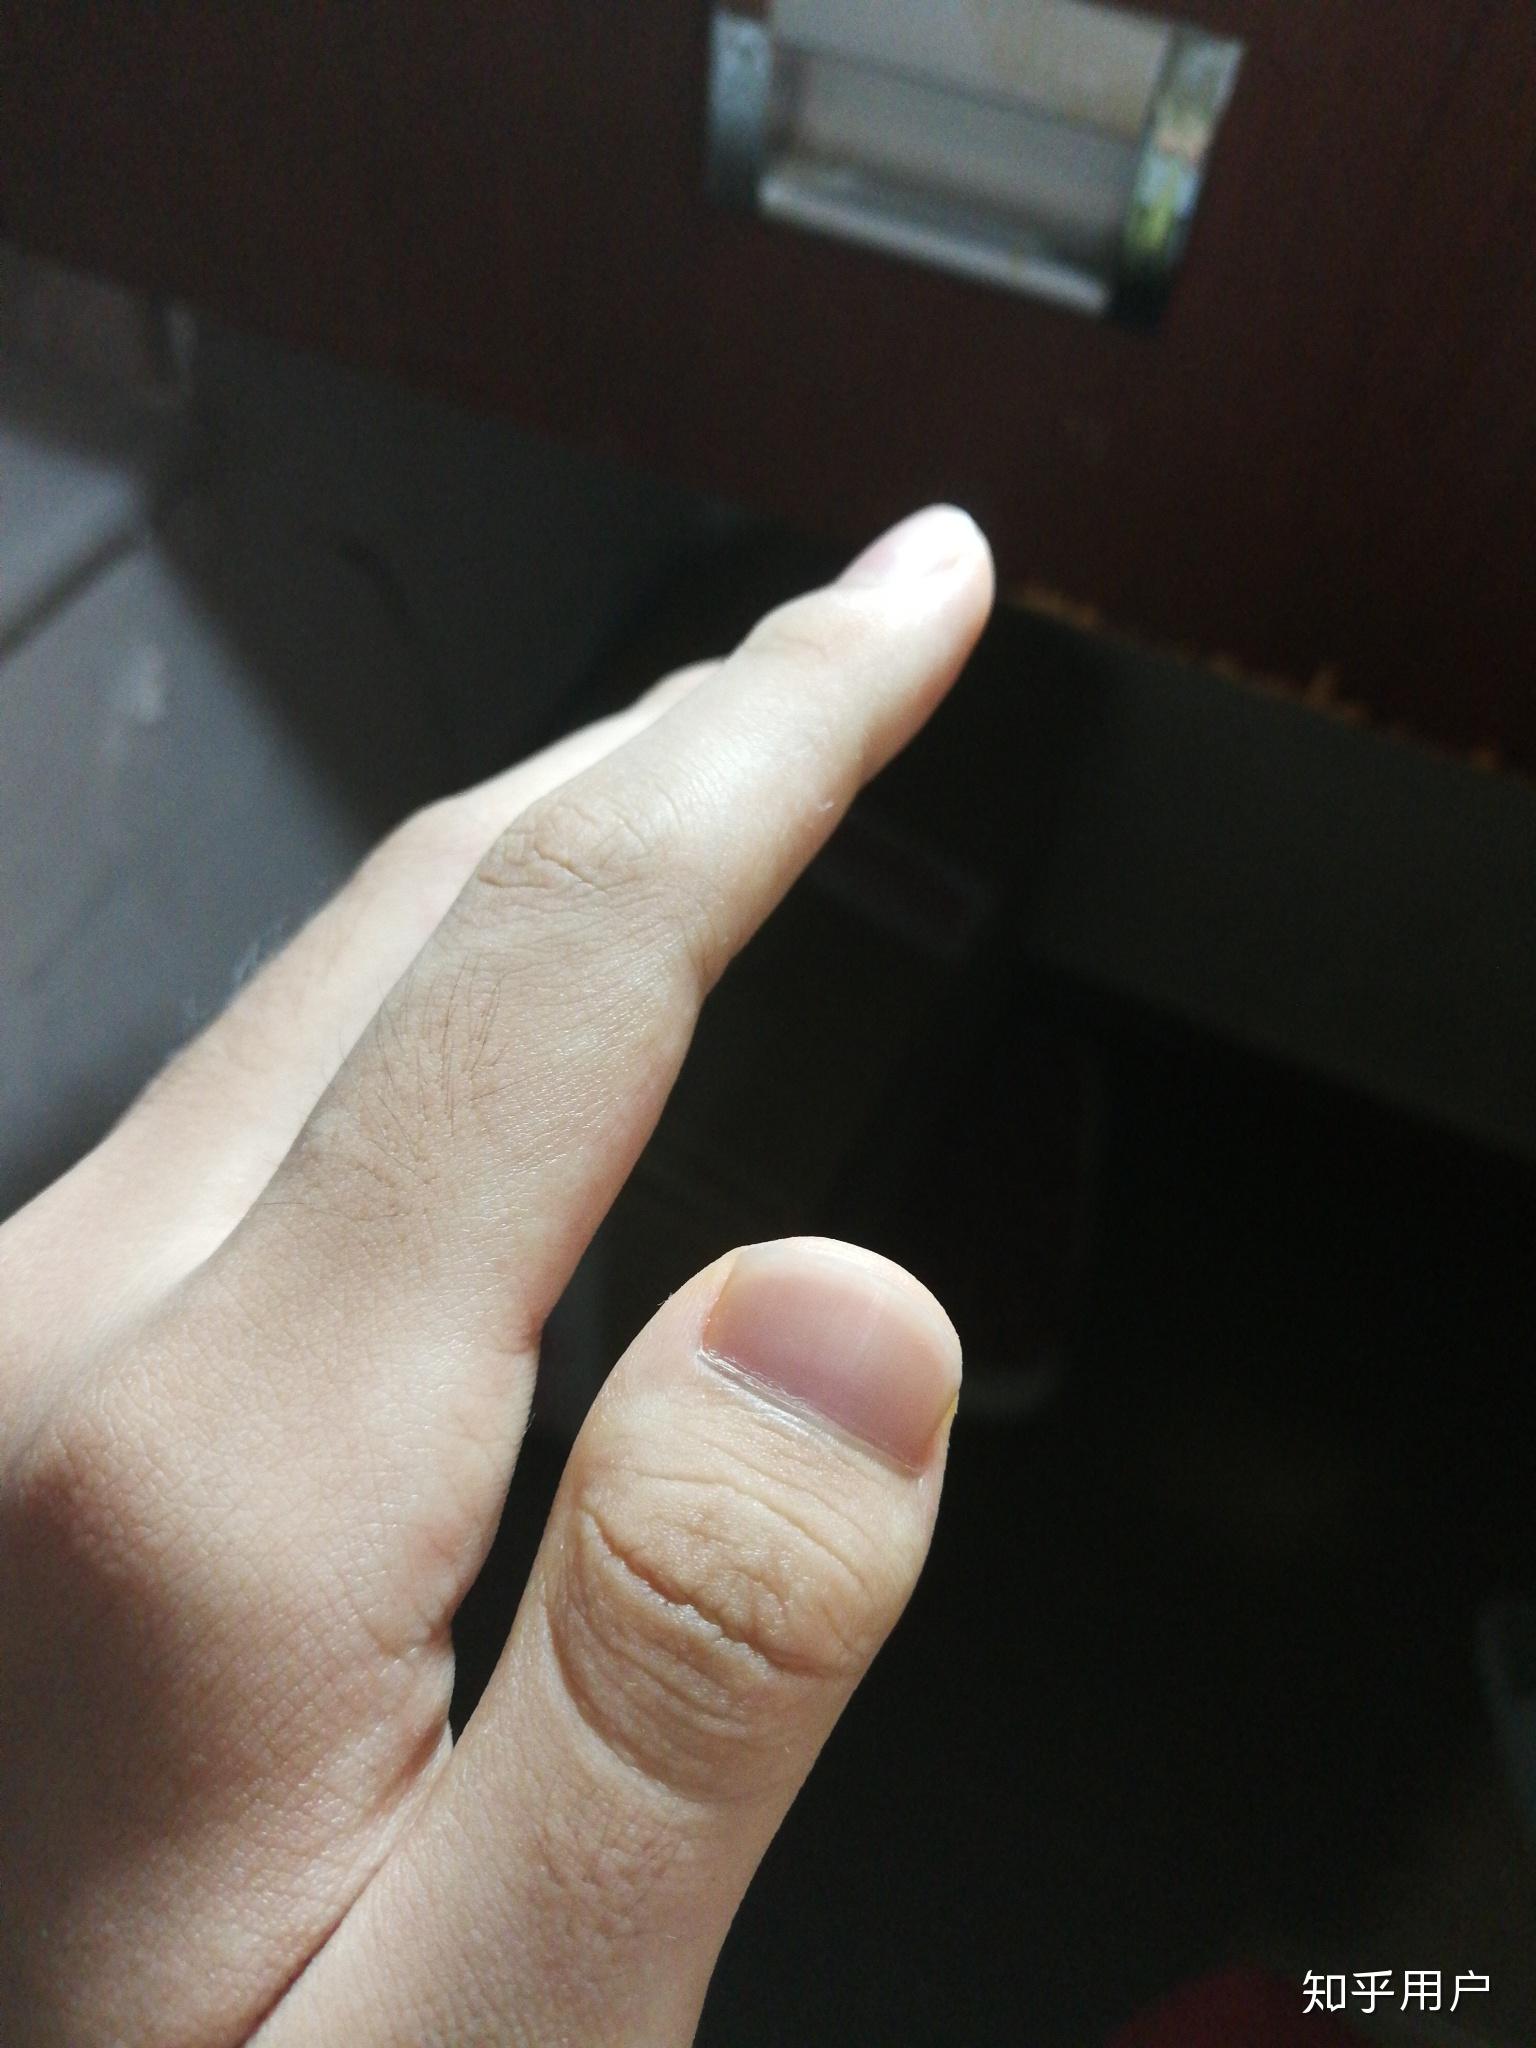 大拇指短甲症图片